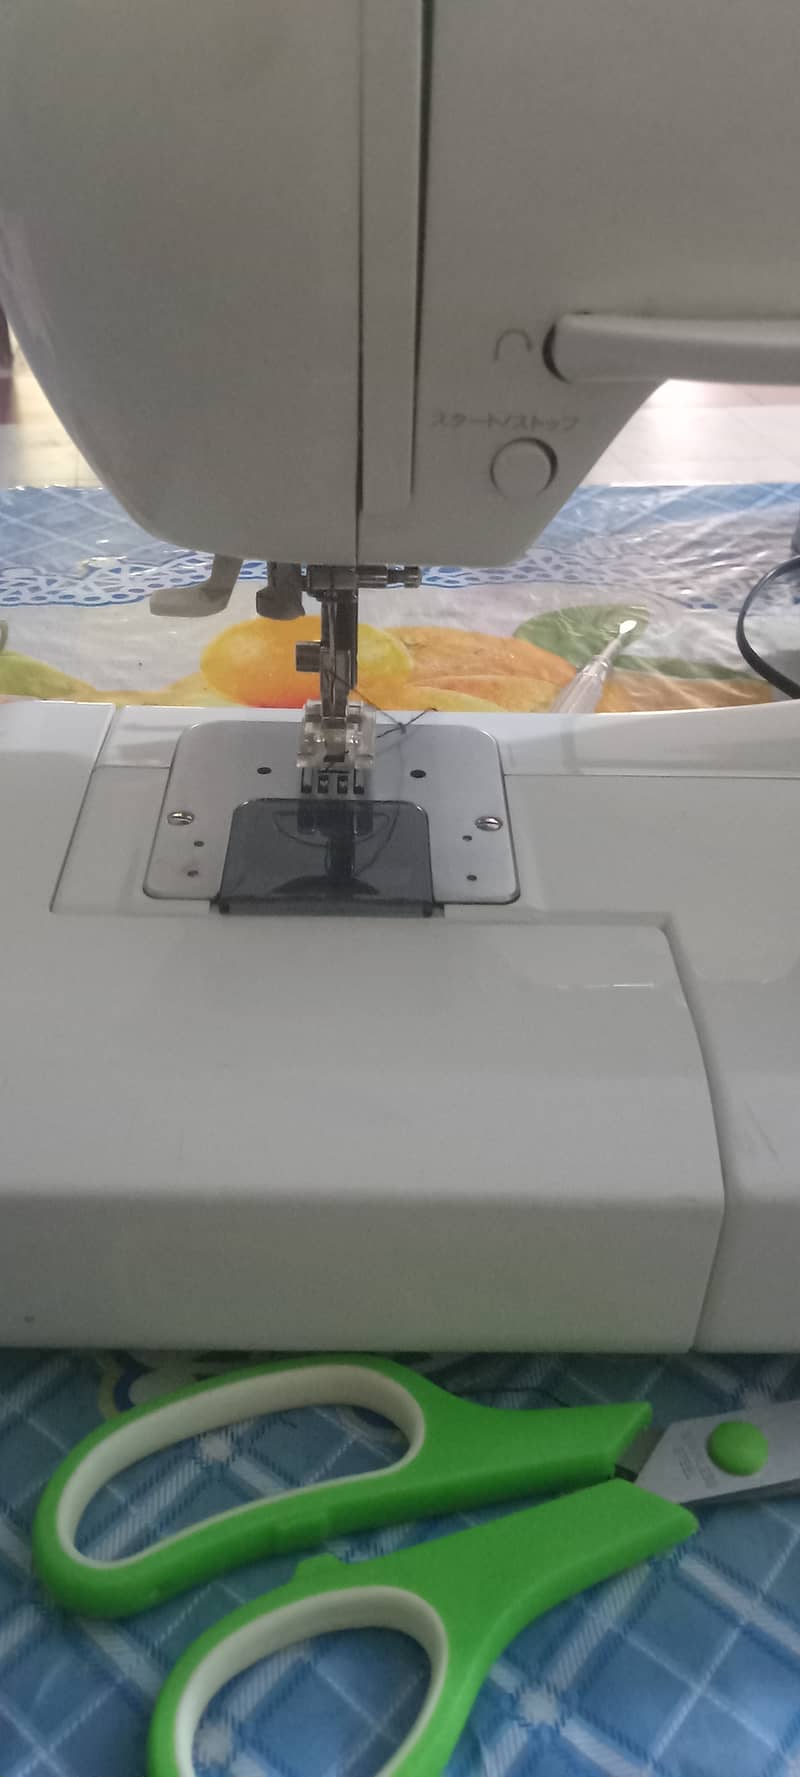 Singer q tie sewing machine 1